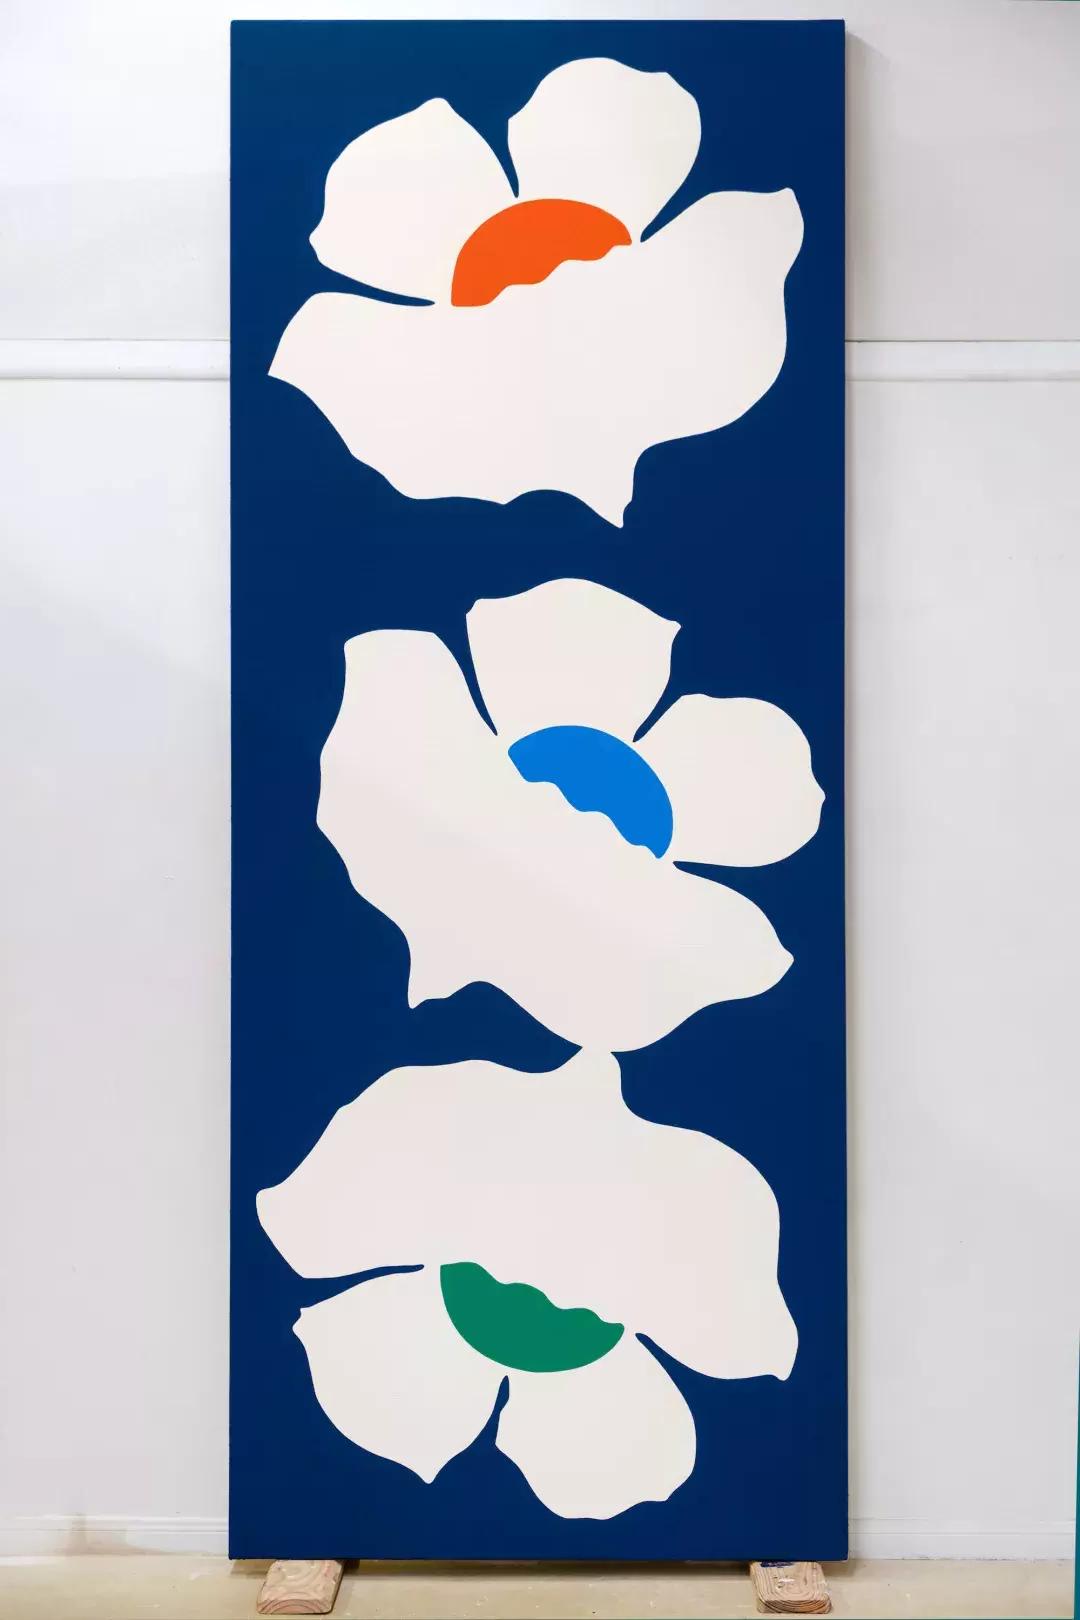 Paul Kremer's "Bloom 25", on display at the Berggruen Gallery